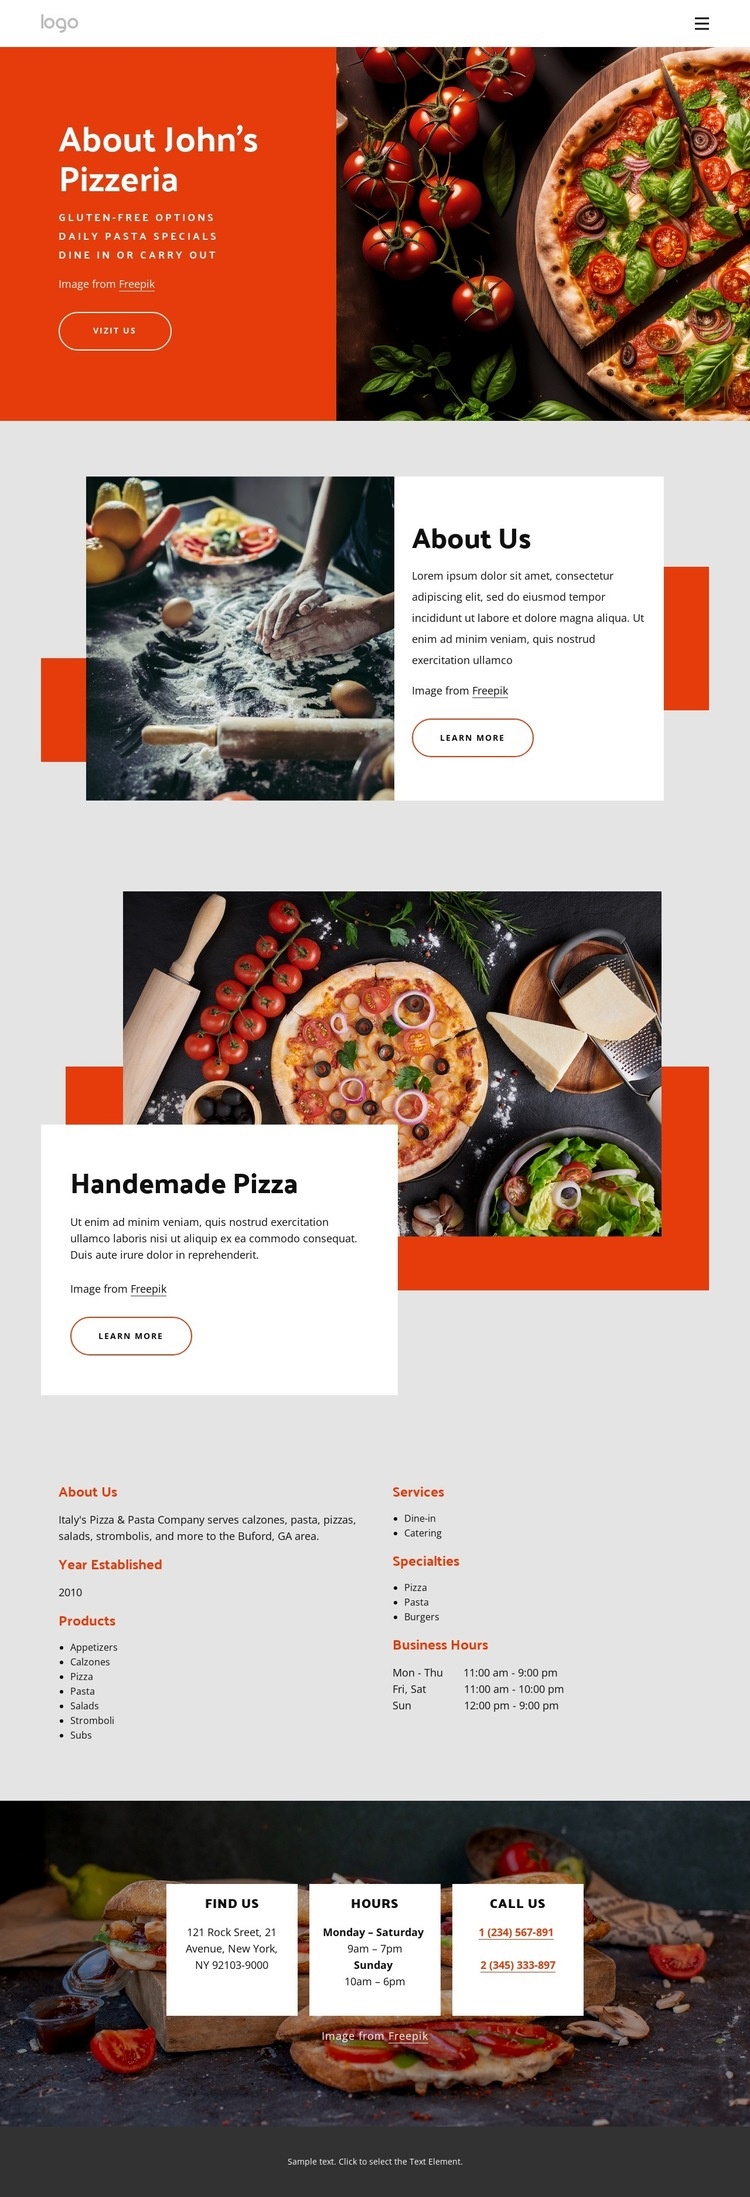 O naší pizzerii Html Website Builder